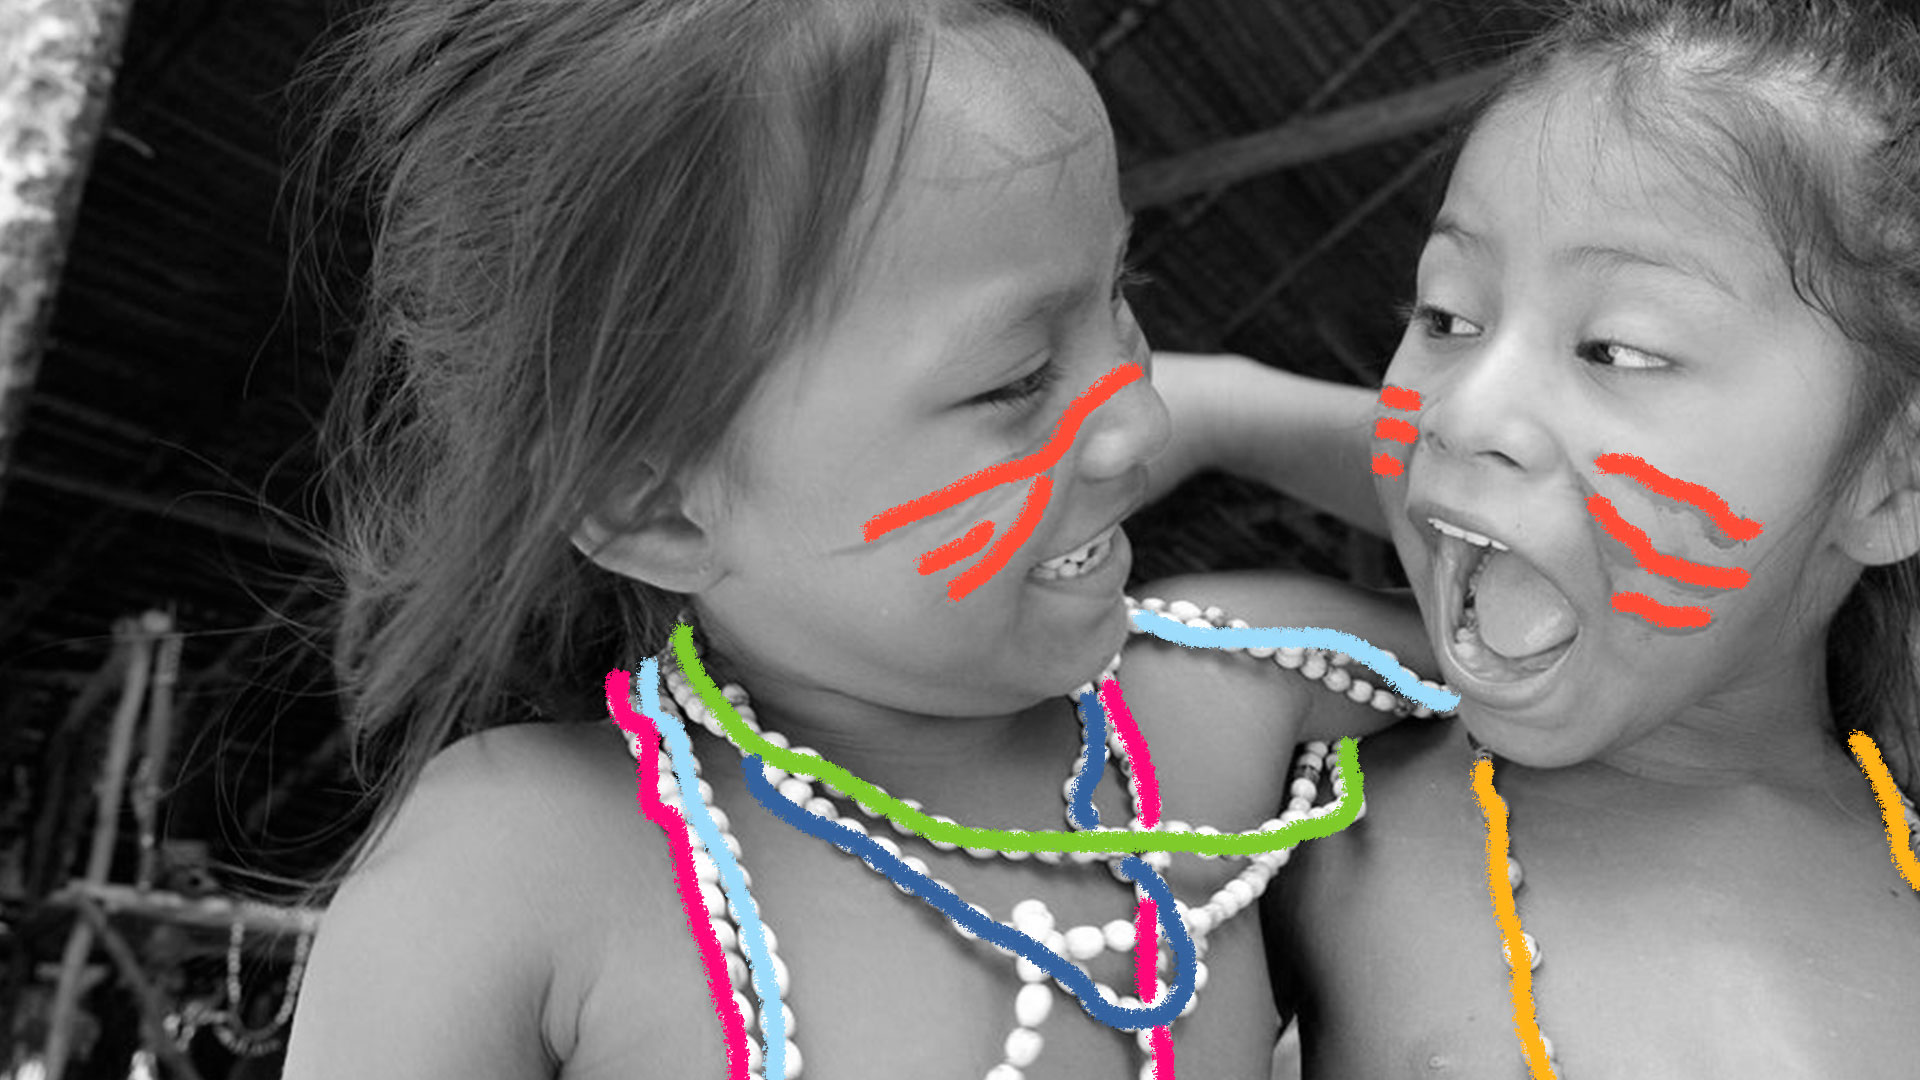 Foto em preto e branco mostra duas meninas índias. A da esquerda sorri enquanto a da direita se prepara, com a boca aberta, para falar alguma coisa.